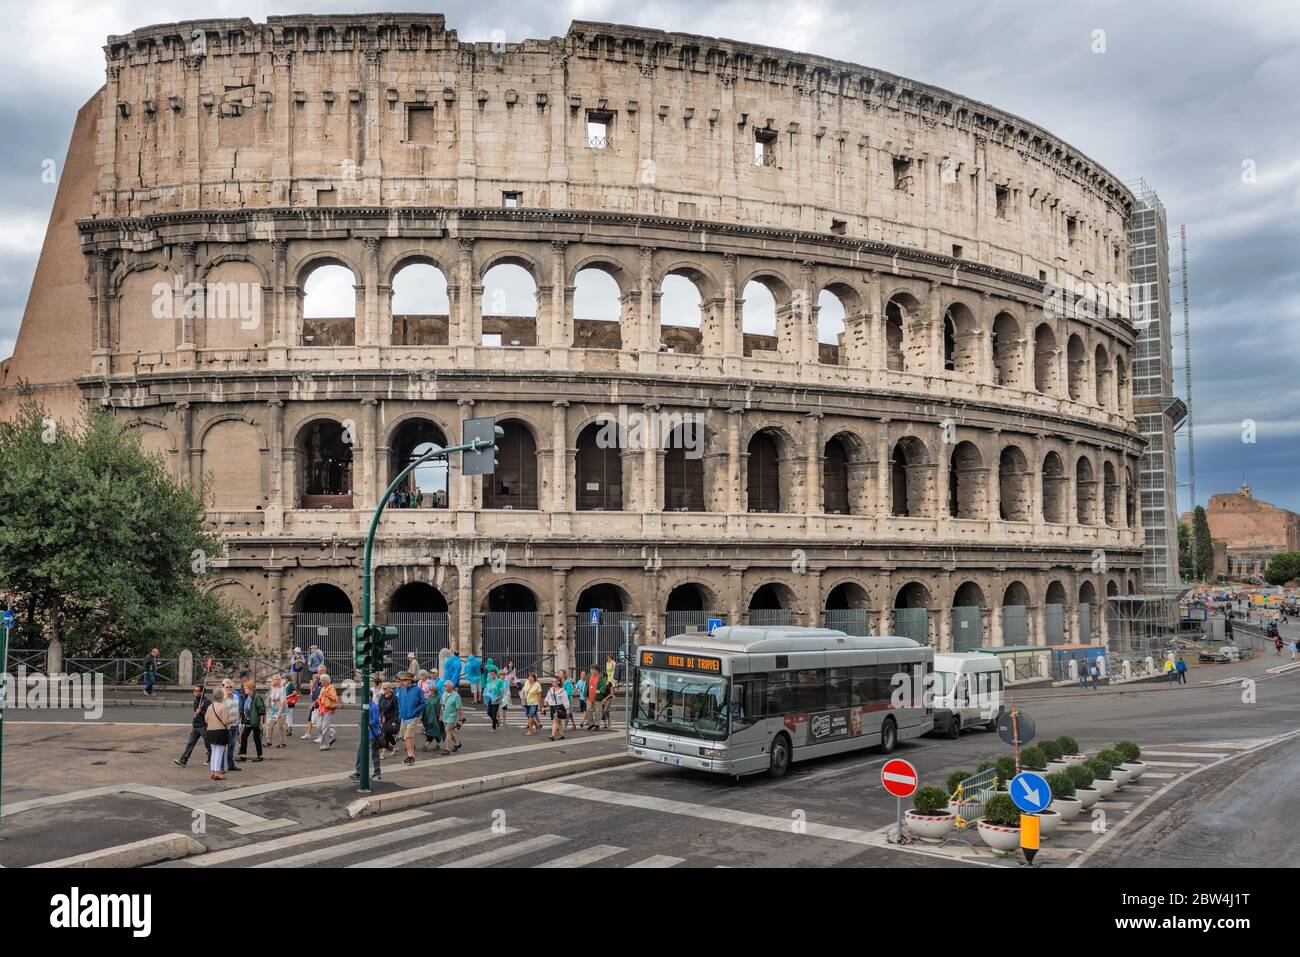 Rome, Italie - 1er septembre 2014 : vue sur l'amphithéâtre Flavian connu sous le nom de Colisée à Rome, Italie. Banque D'Images